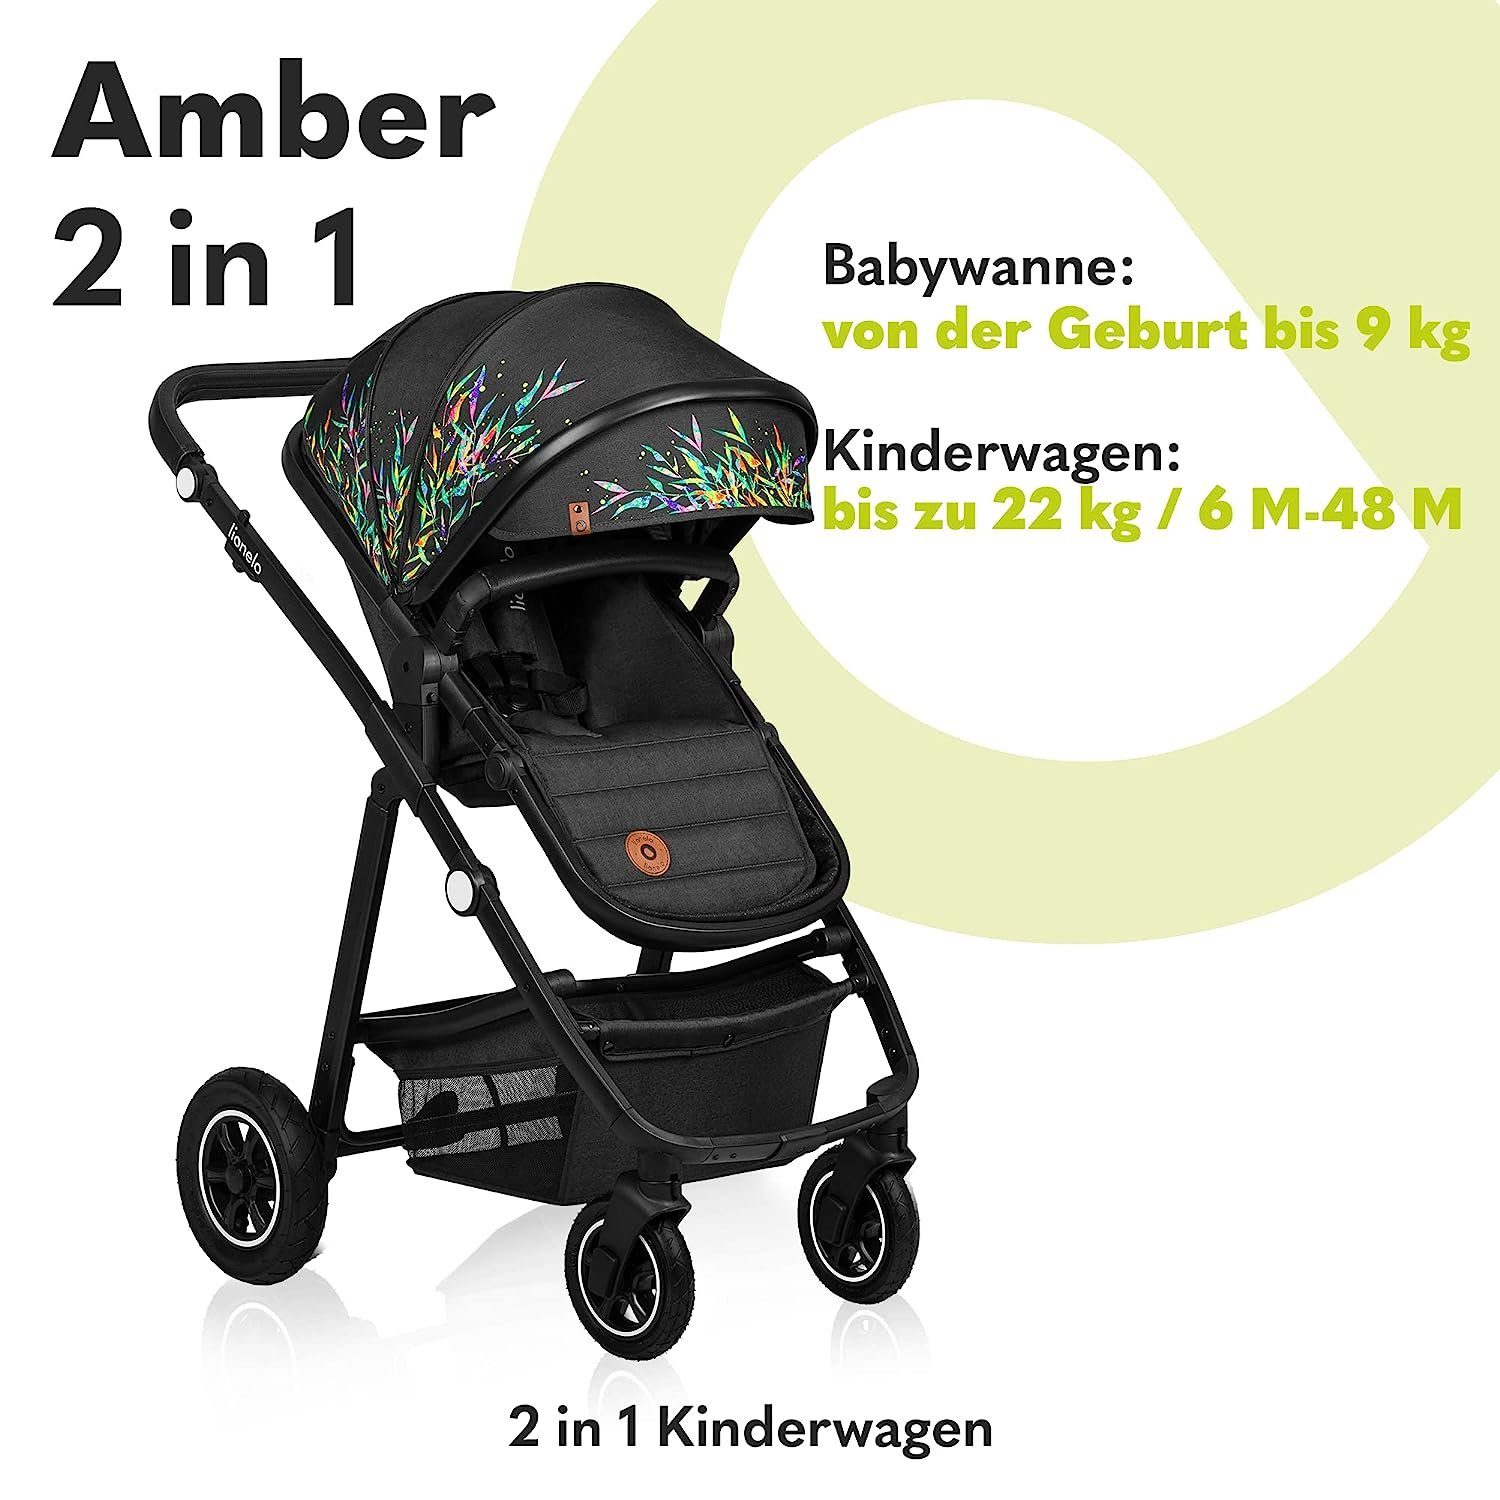 lionelo Kombi-Kinderwagen Amber, Regenschutz Schutzüberzug Lovin Tasche Moskitonetz 2in1